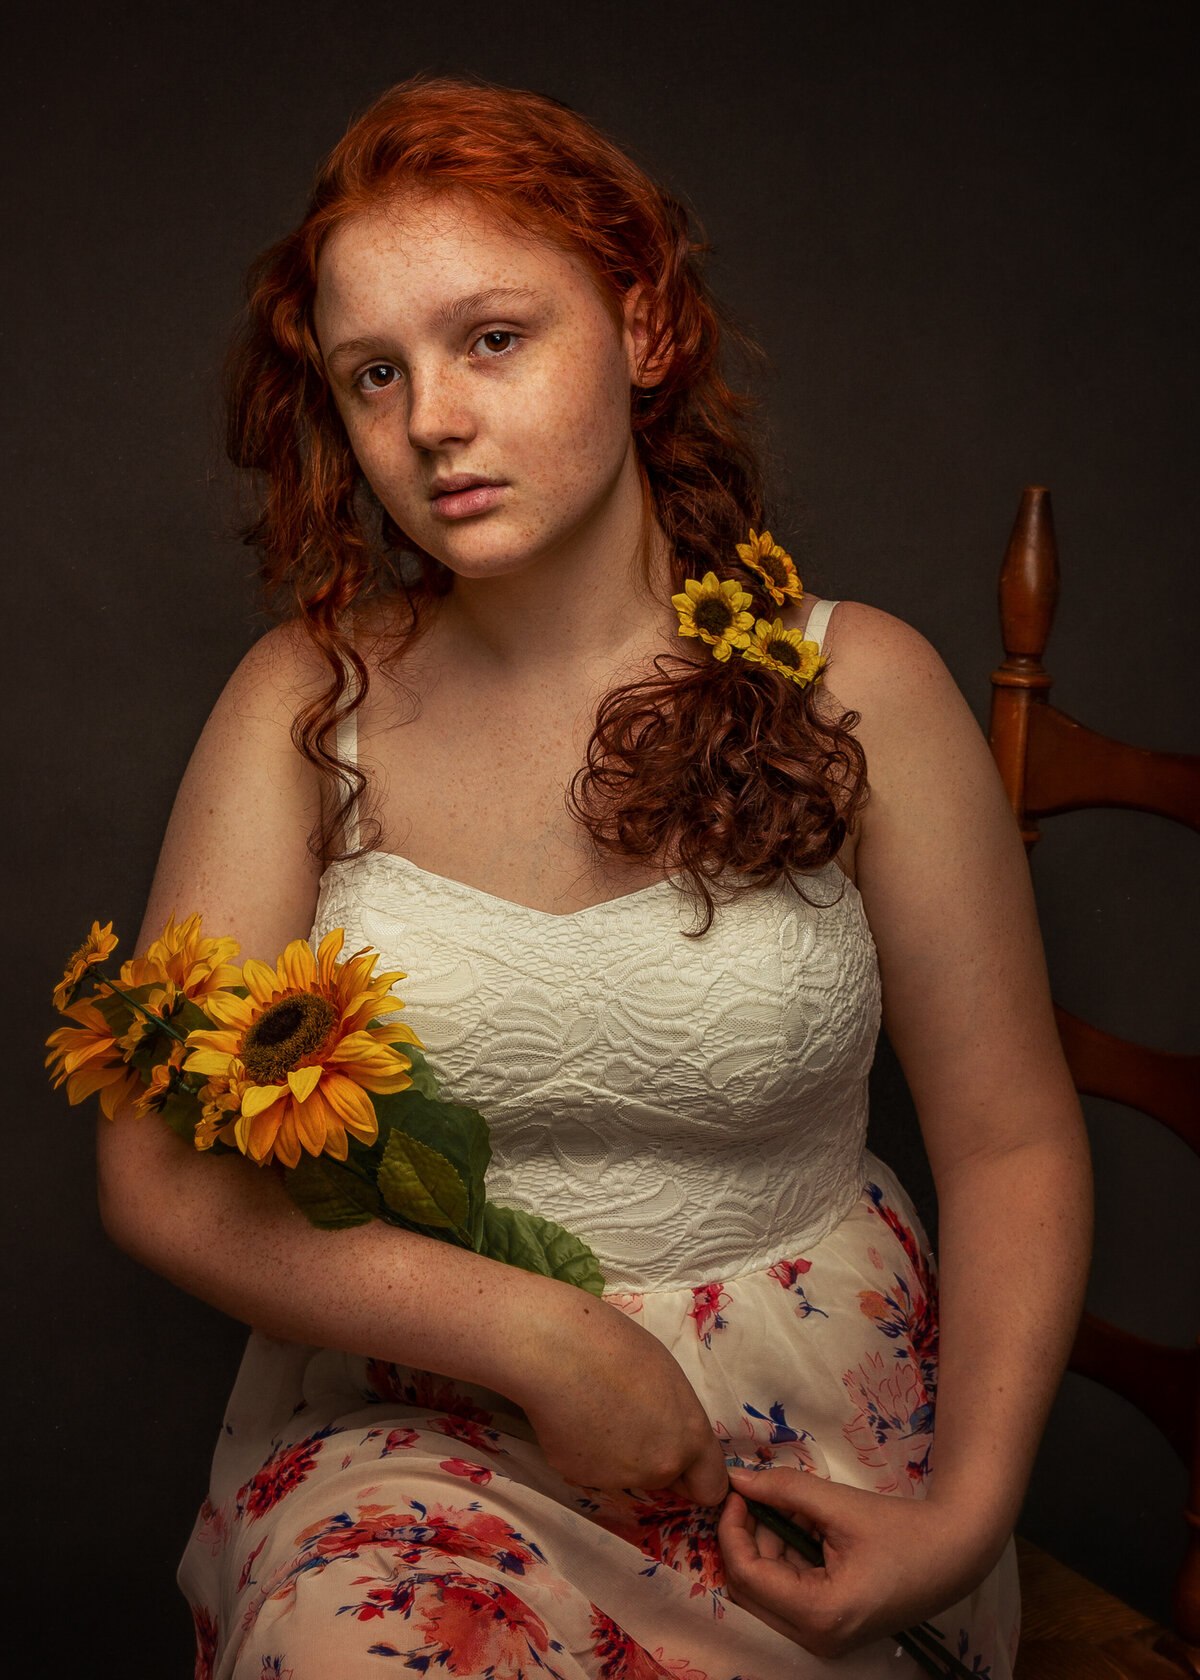 girl in flowery dress holding orange flowers in a studio